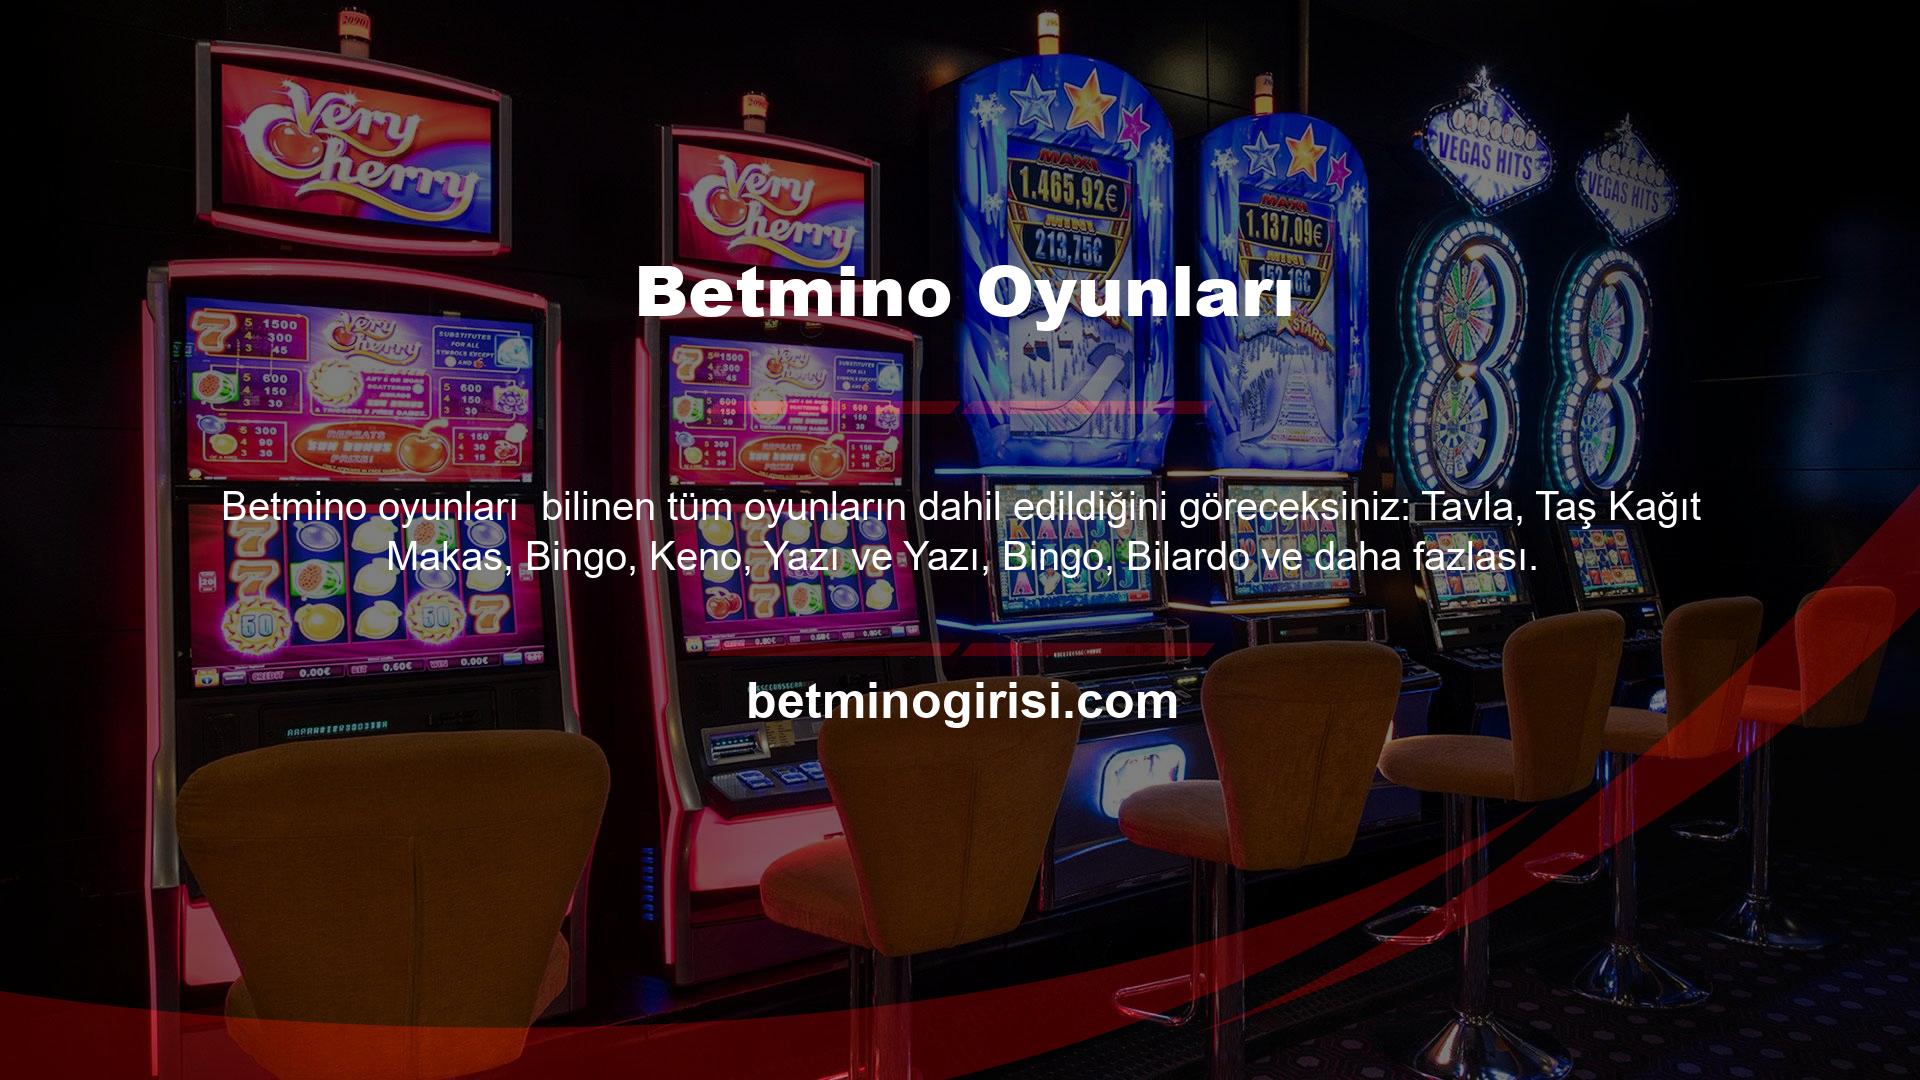 Mobil bahis siteleri arasında 'Betmino tüm cep telefonları için çözüm sağlayan bir versiyon uygulamaktadır